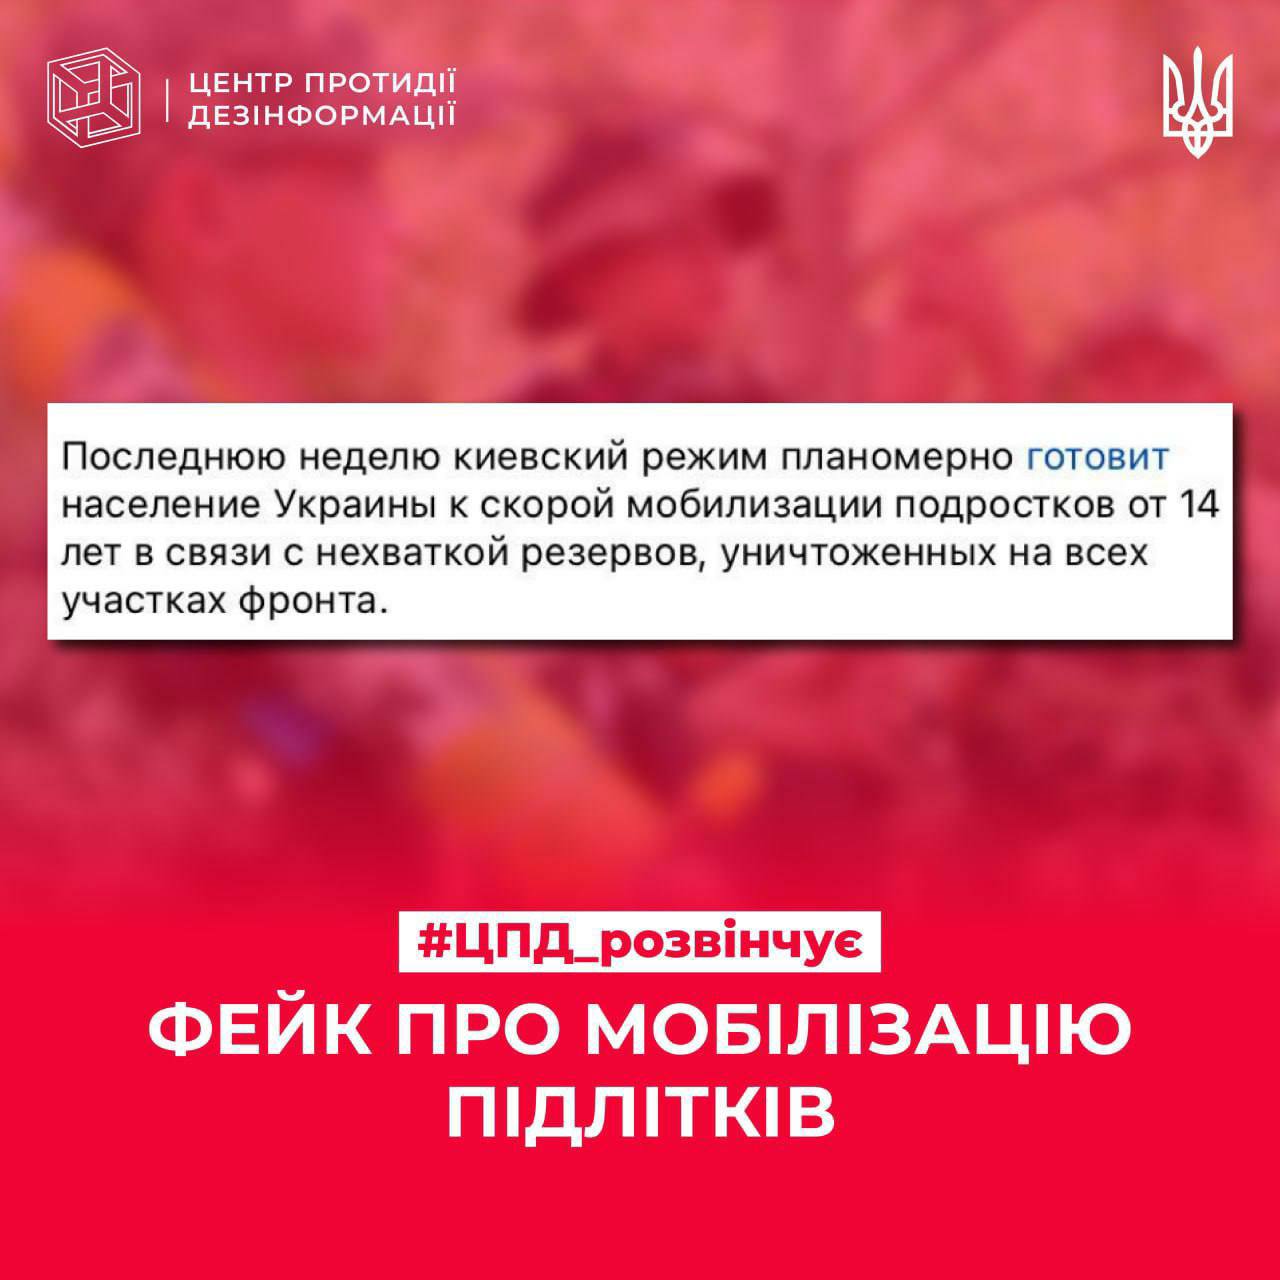 Новости Днепра про «В Україні готують мобілізацію підлітків від 14 років»: у мережі поширюють новий фейк